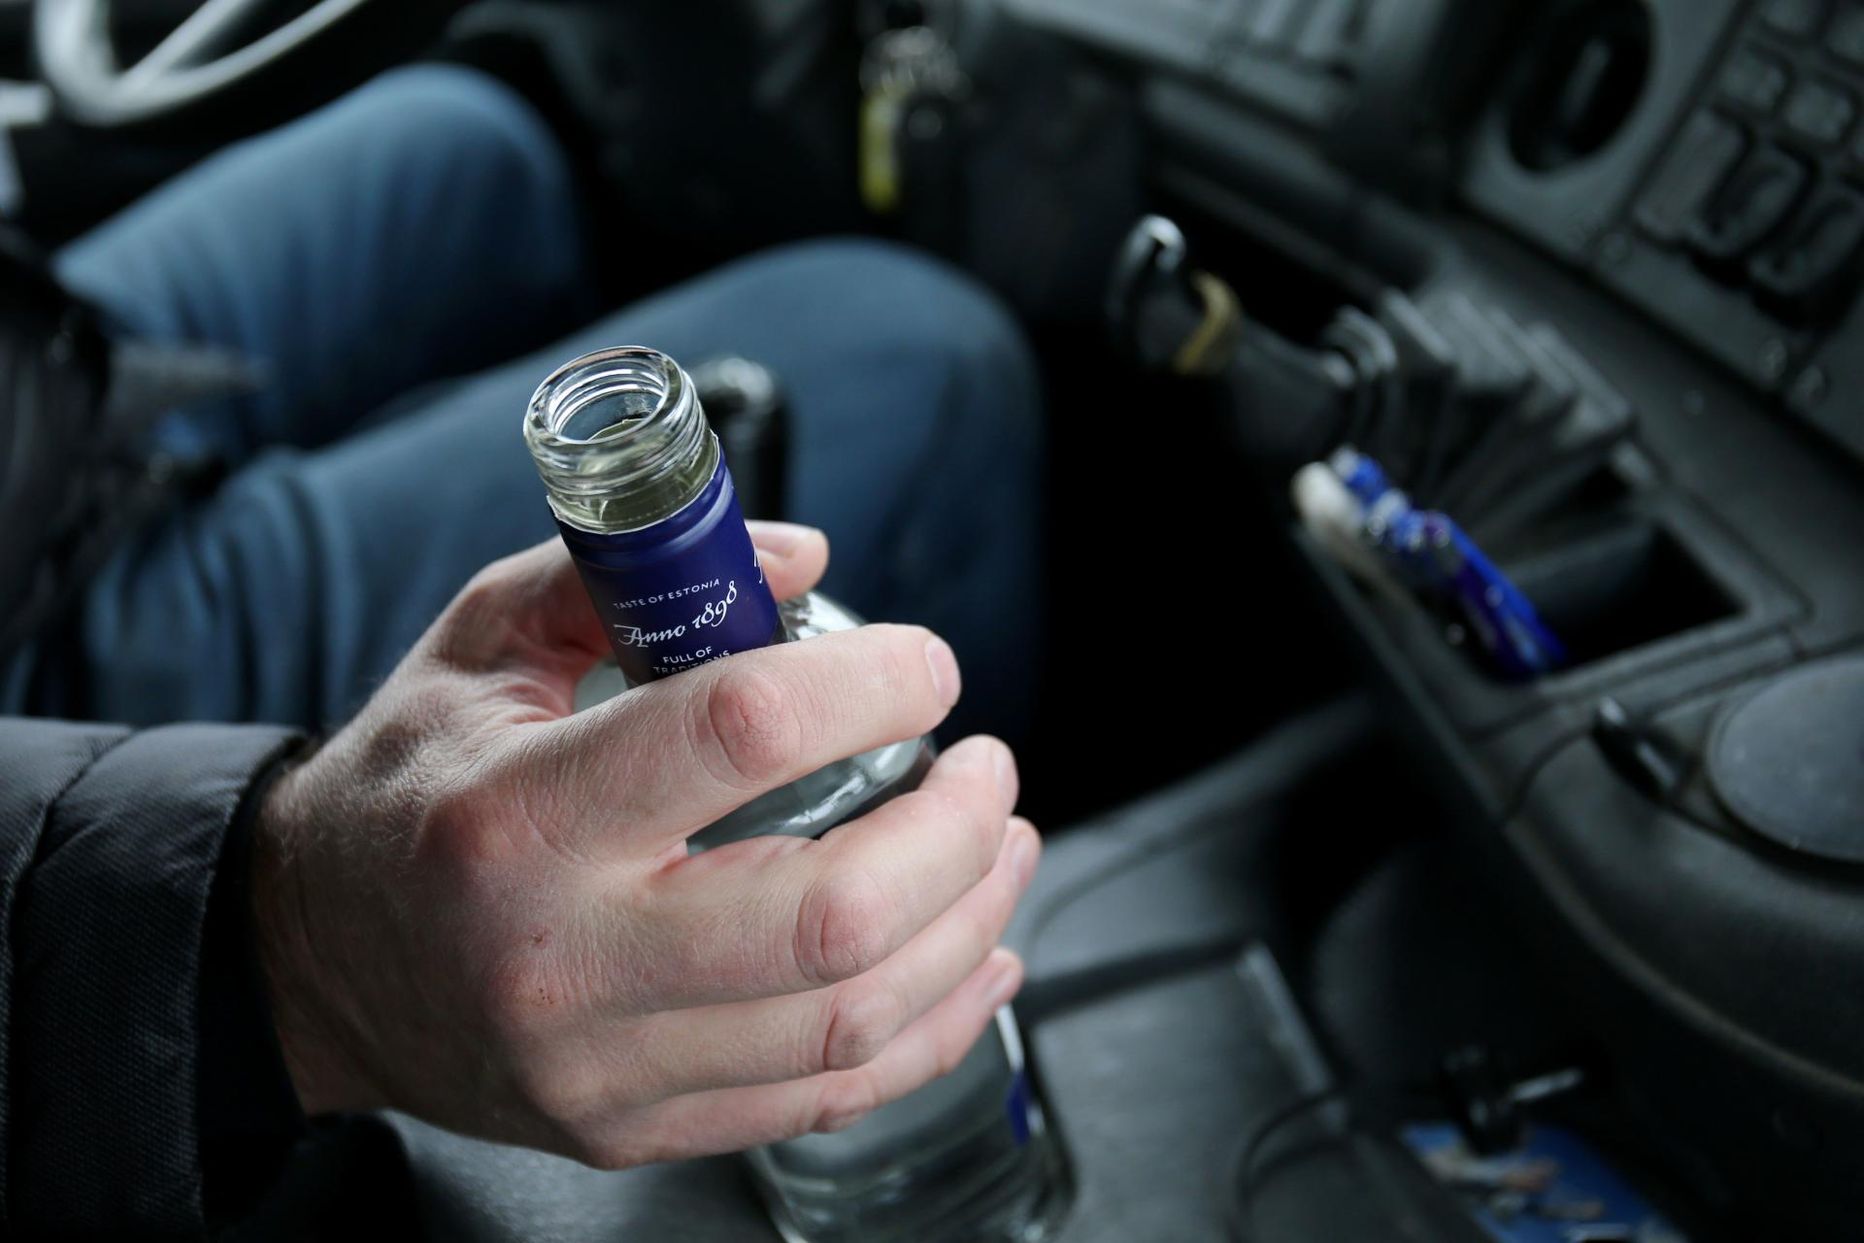 Politsei kõrvaldas reedel liiklusest viis narko- või alkoholijoobe tunnustega sõidukijuhti. Pilt on illustreeriv.